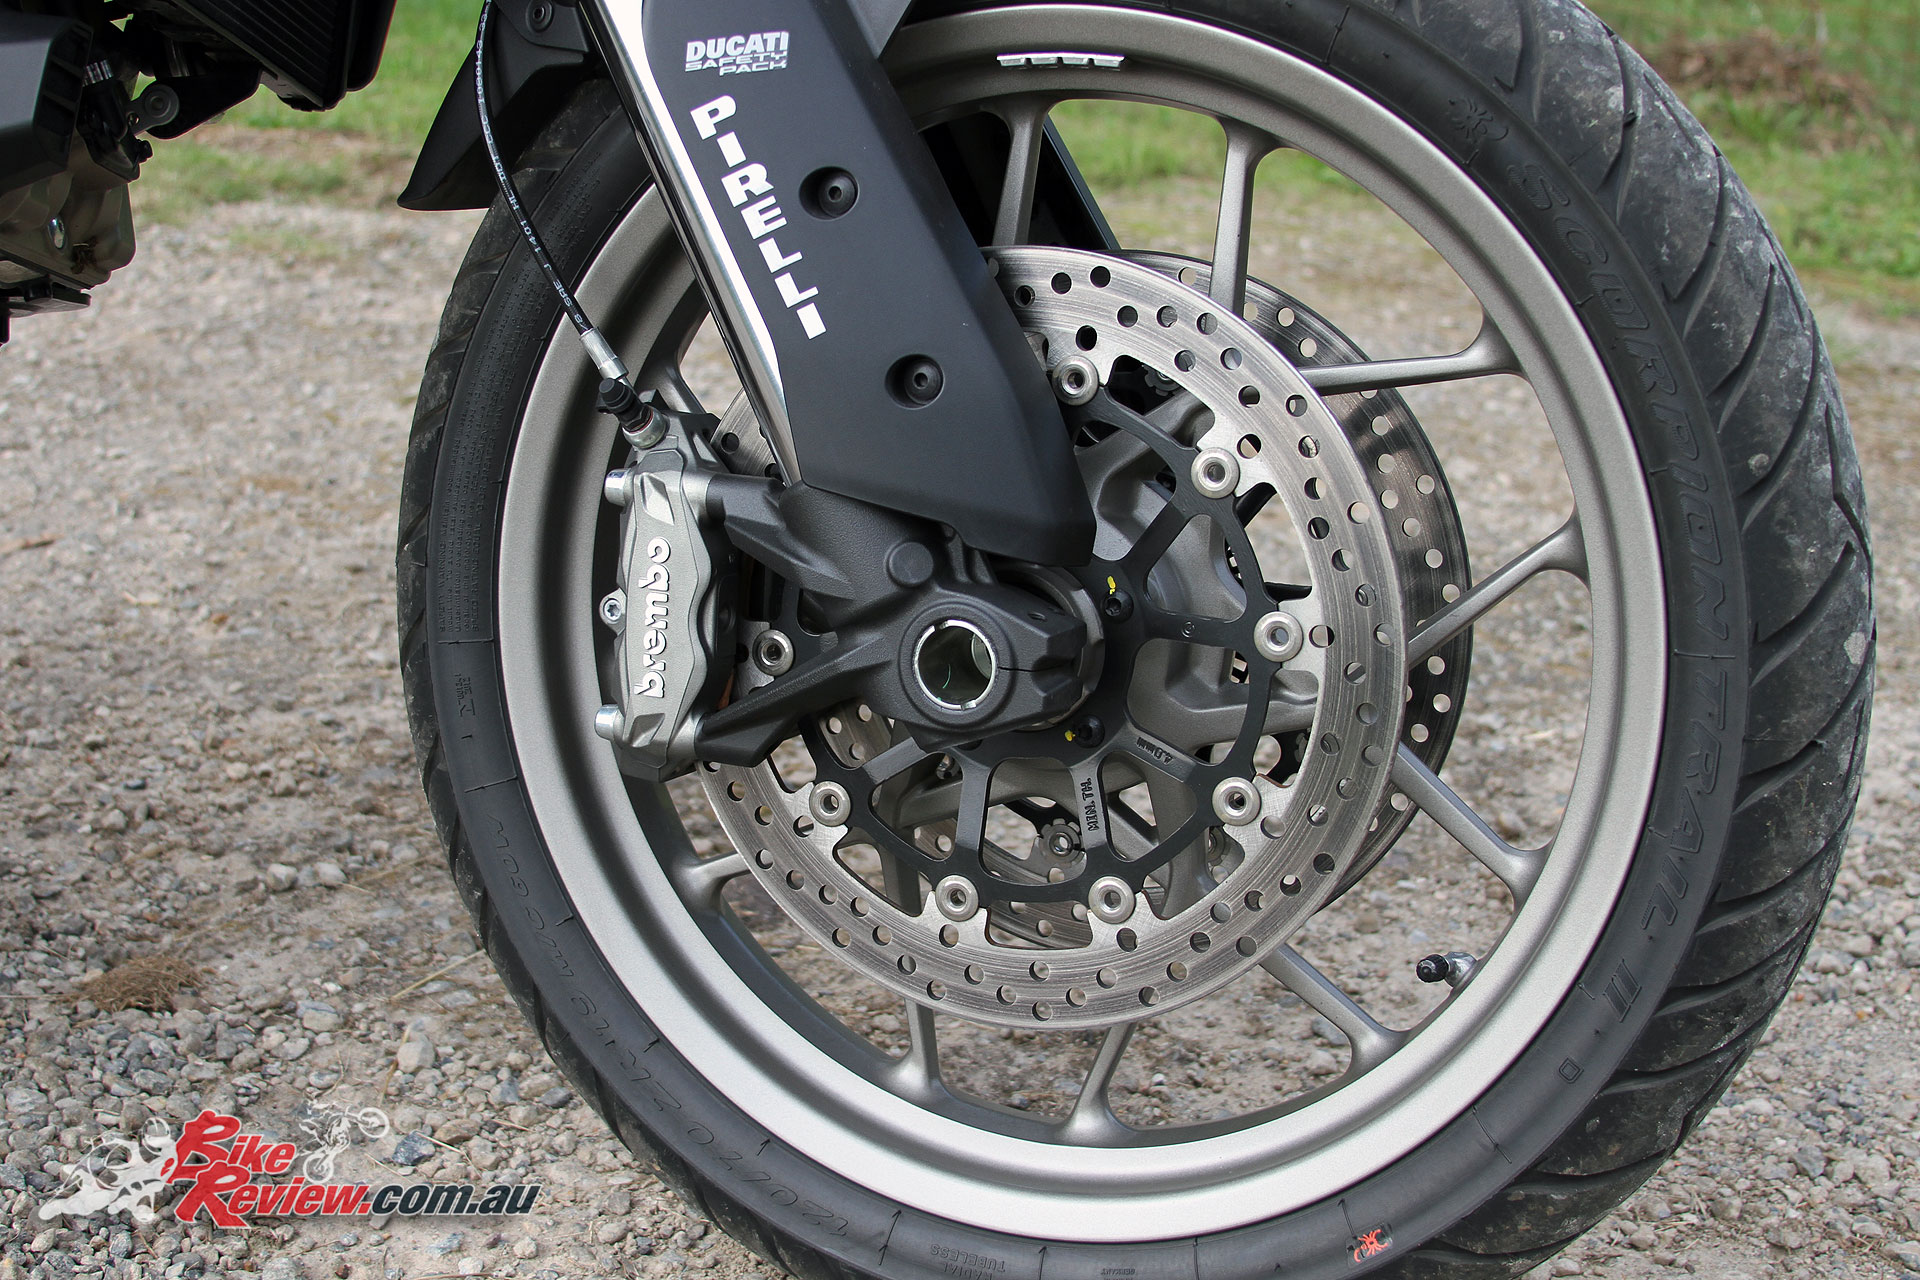 2017 Ducati Multistrada 950 Brembo four-piston calipers